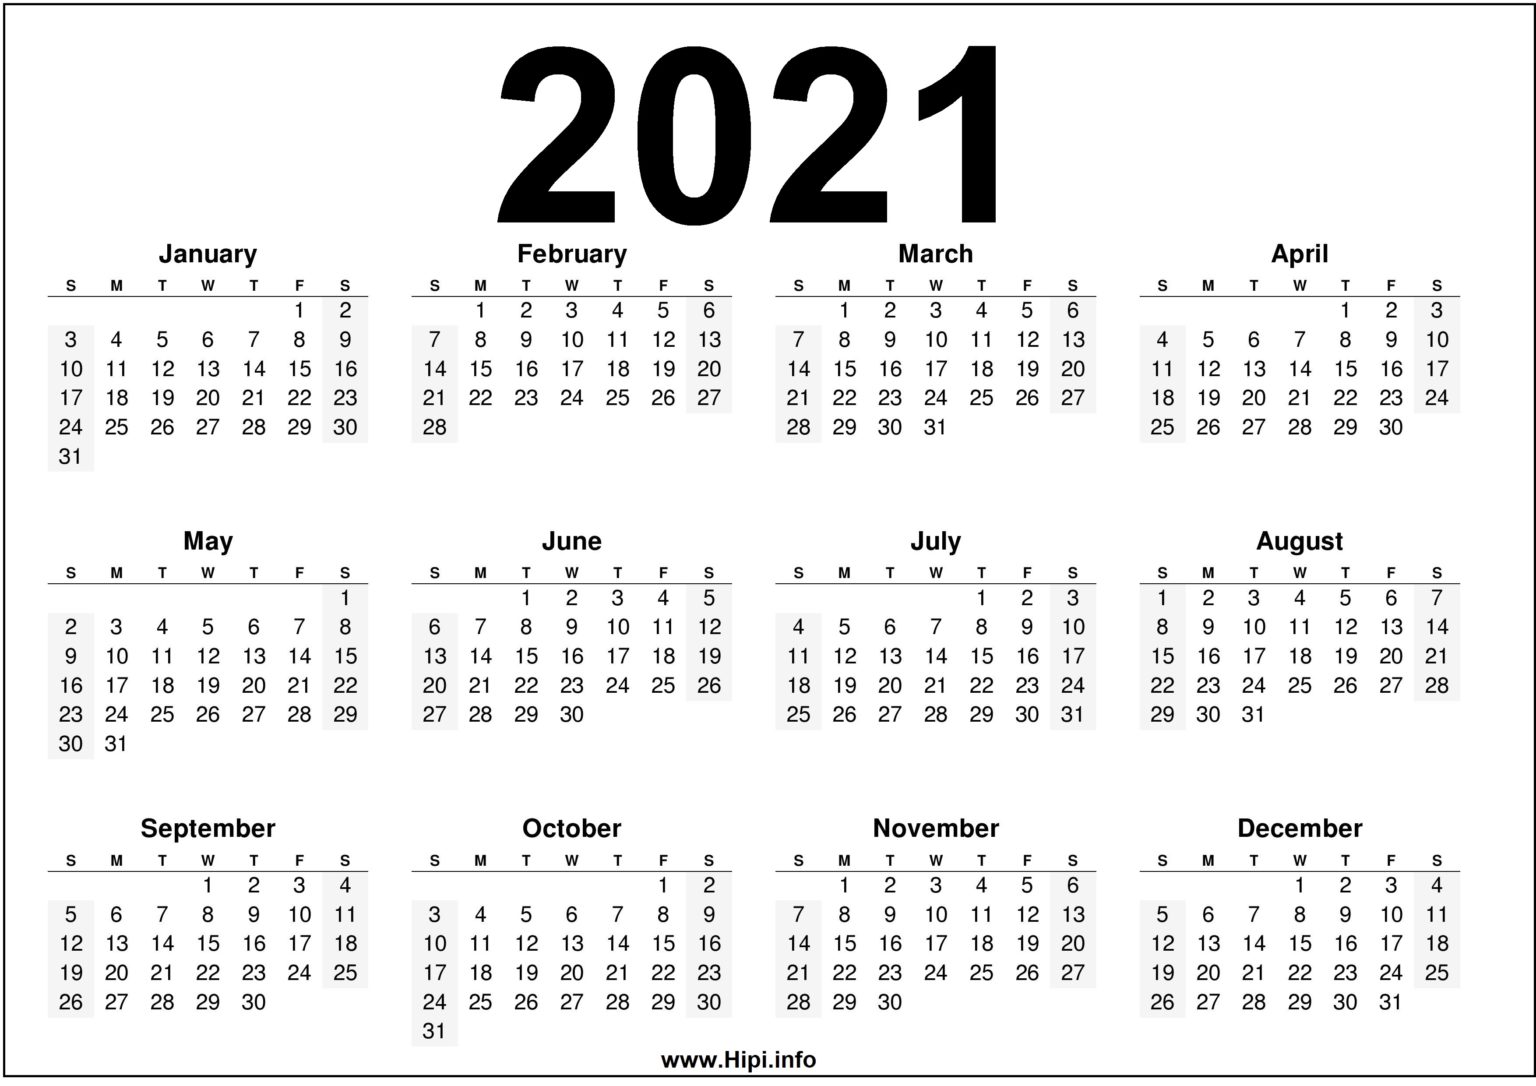 2021 Calendar Printable Free Free Download Hipi info Calendars 